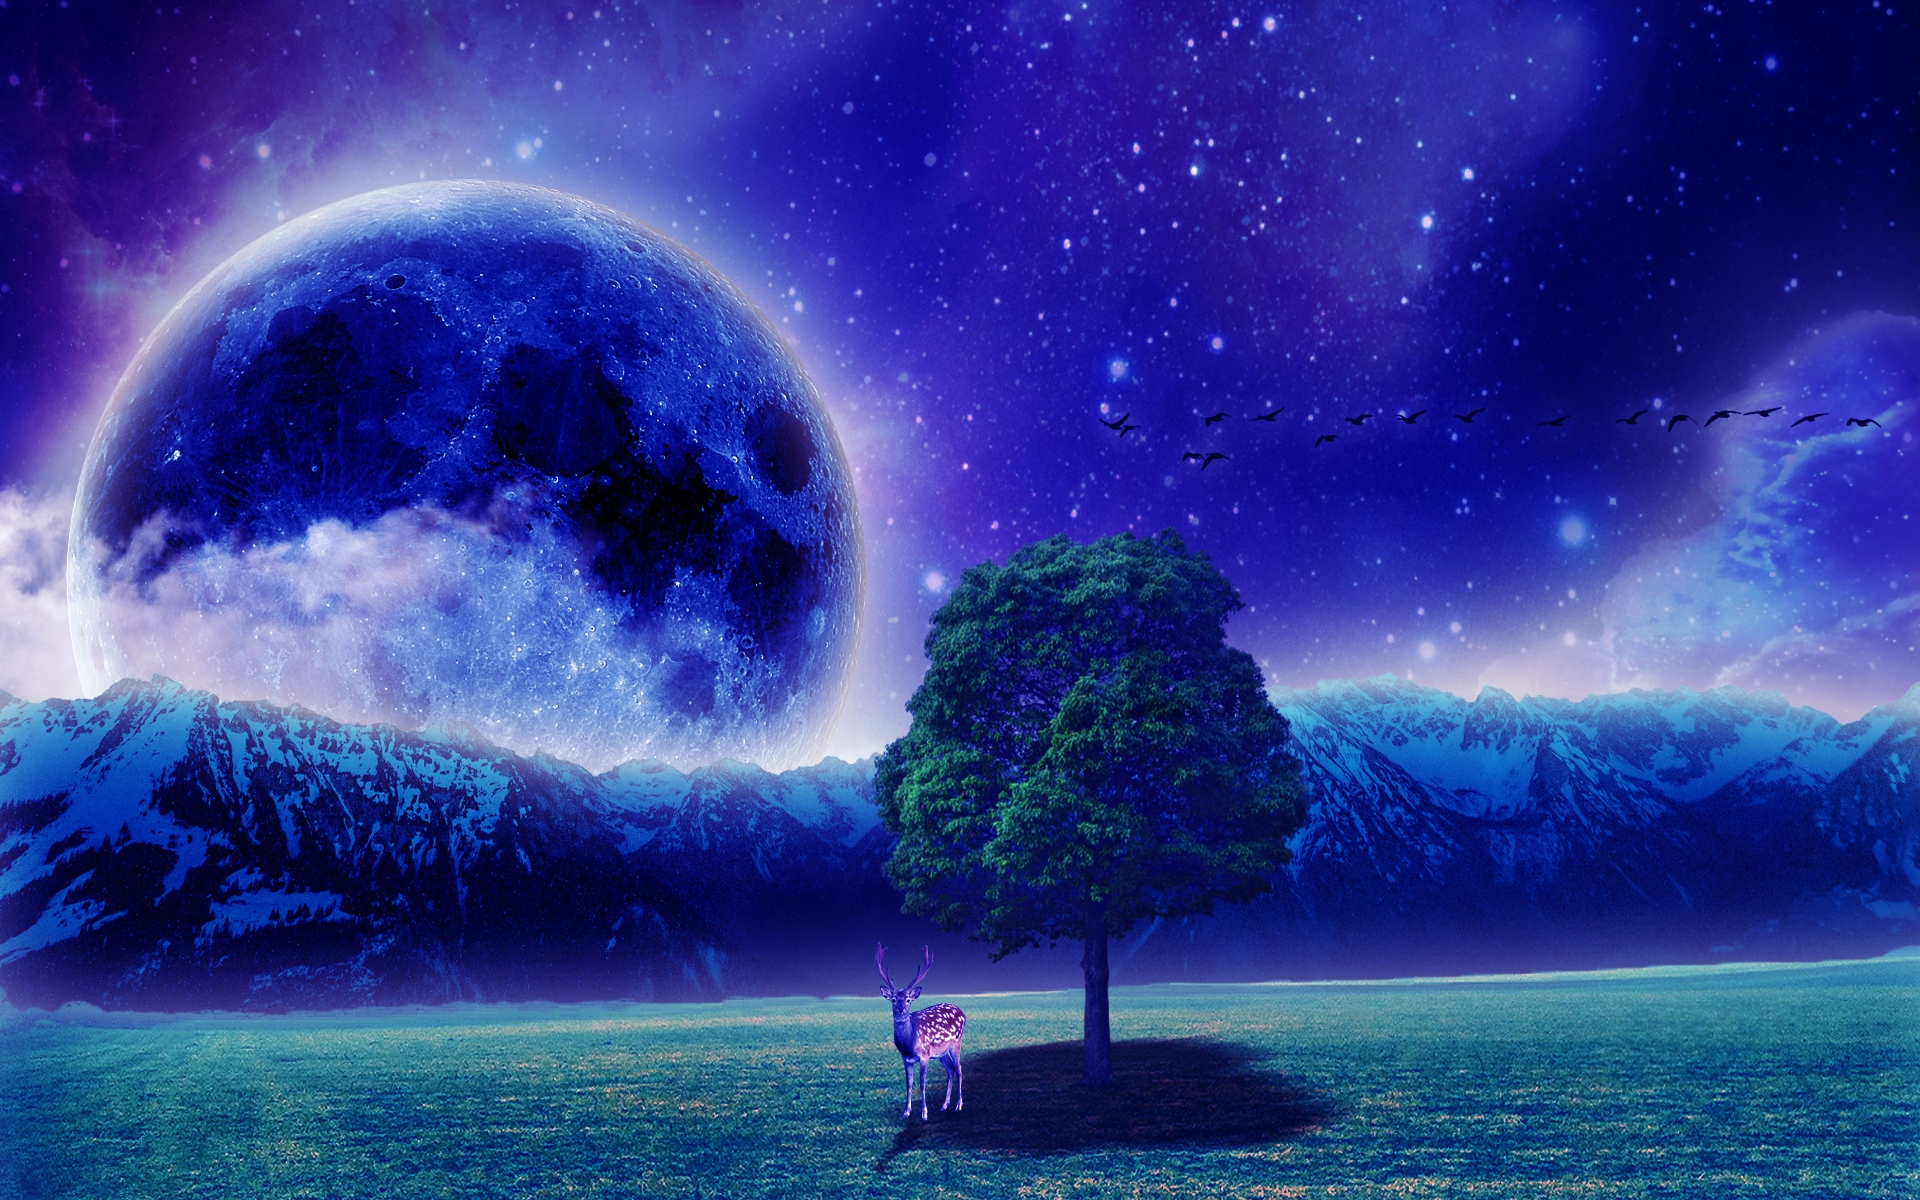 Free download wallpaper Fantasy, Sky, Moon, Mountain, Tree, Field, Deer, Artistic on your PC desktop